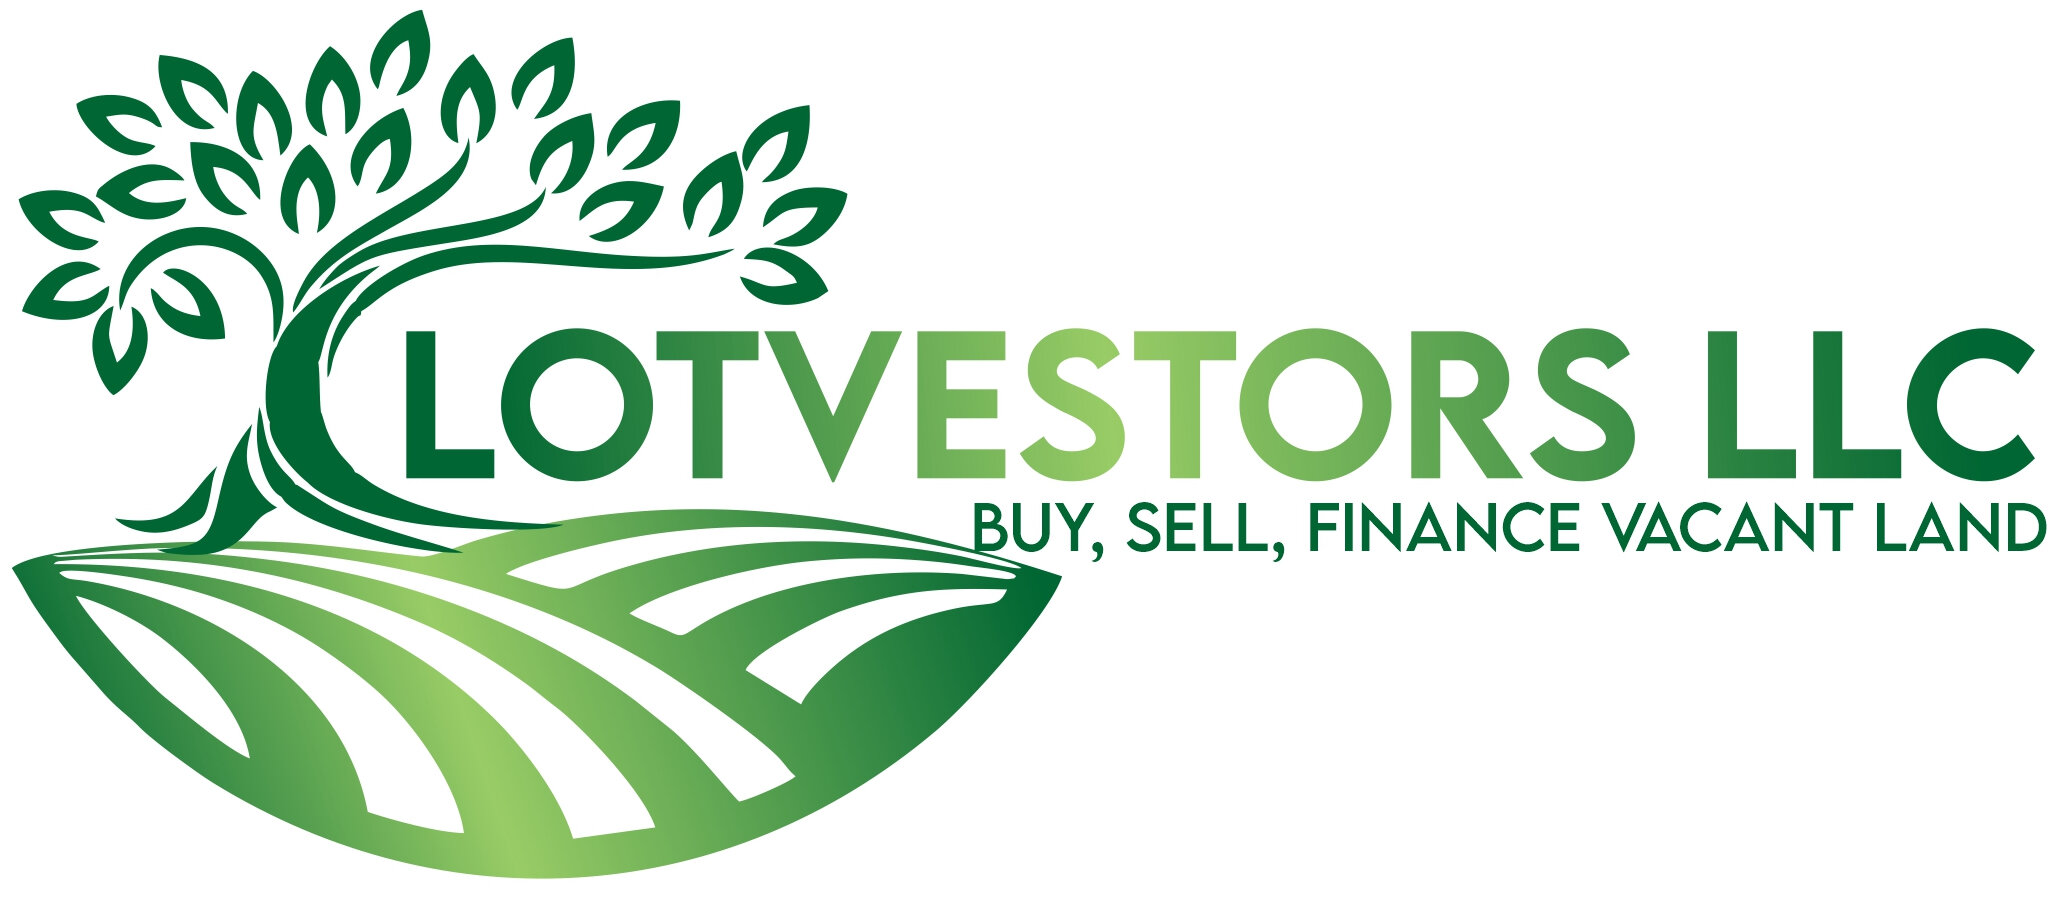 Lotvestors LLC logo